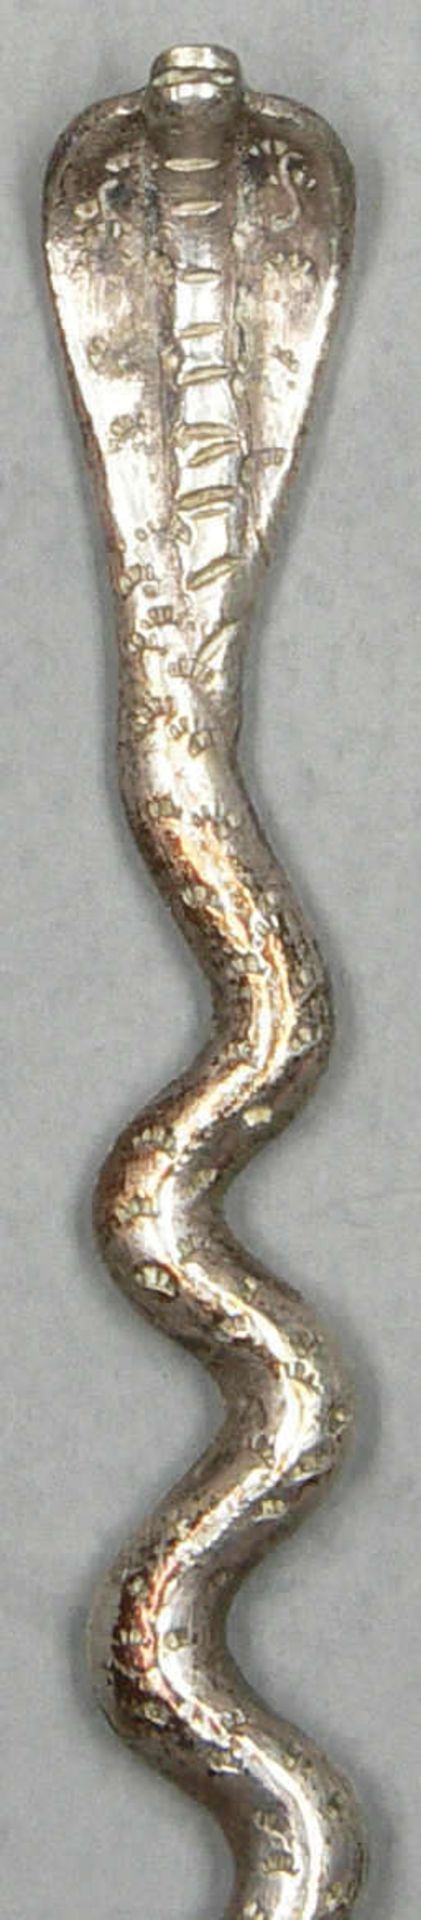 kleiner handgetriebener Zierlöffel "Kobra" smaller hand-done ornamental spoon "cobra" - Image 2 of 2